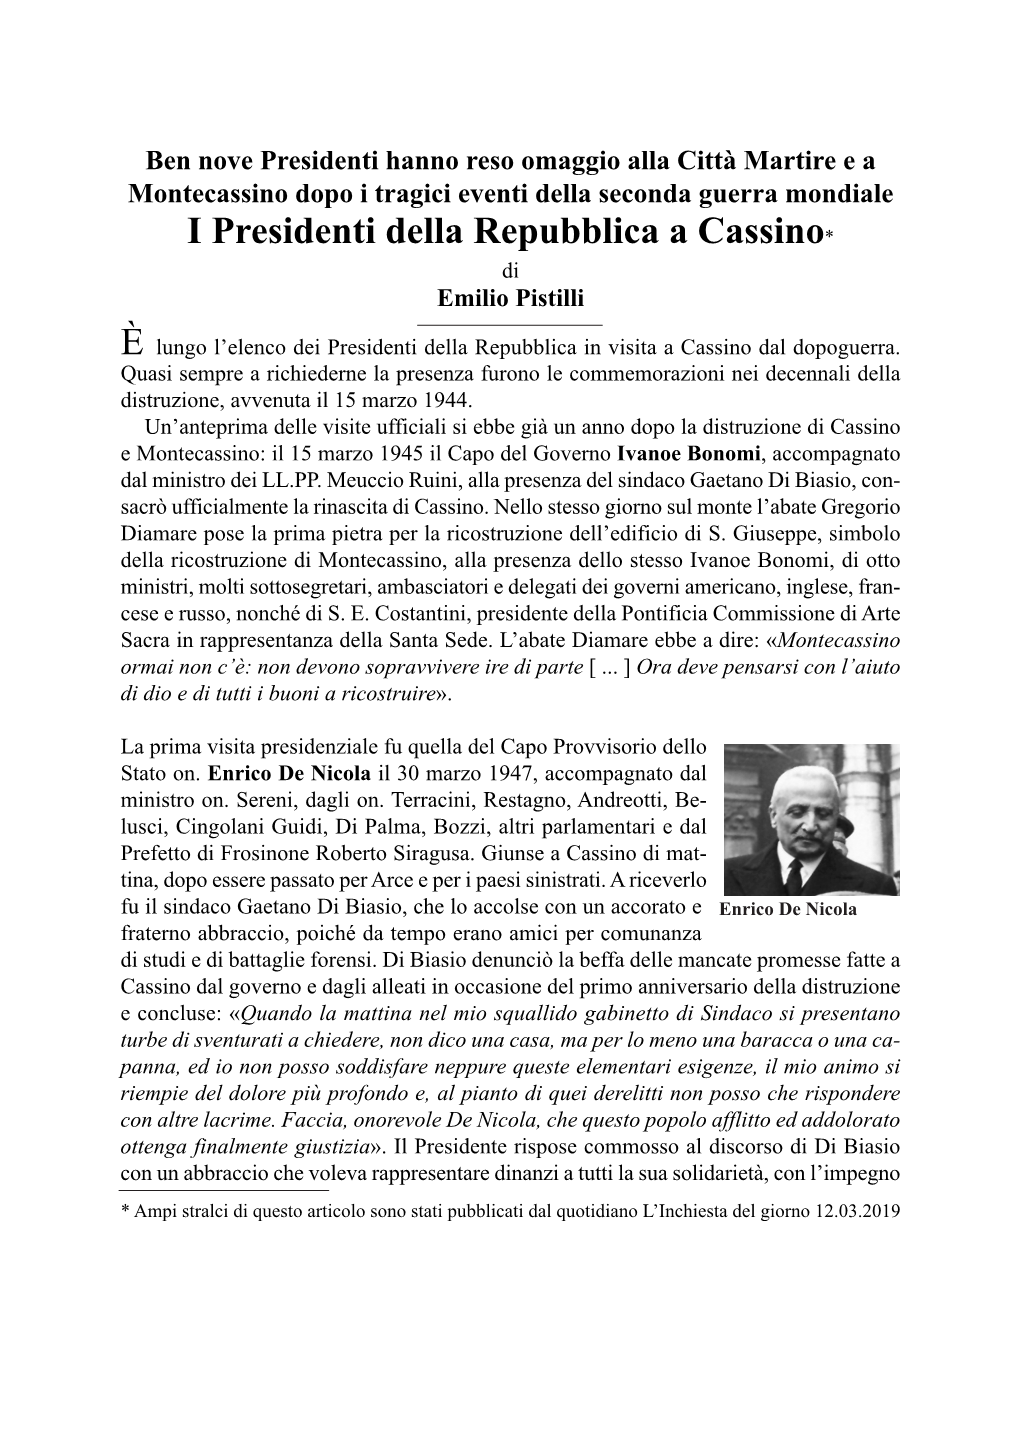 I Presidenti Della Repubblica a Cassino*